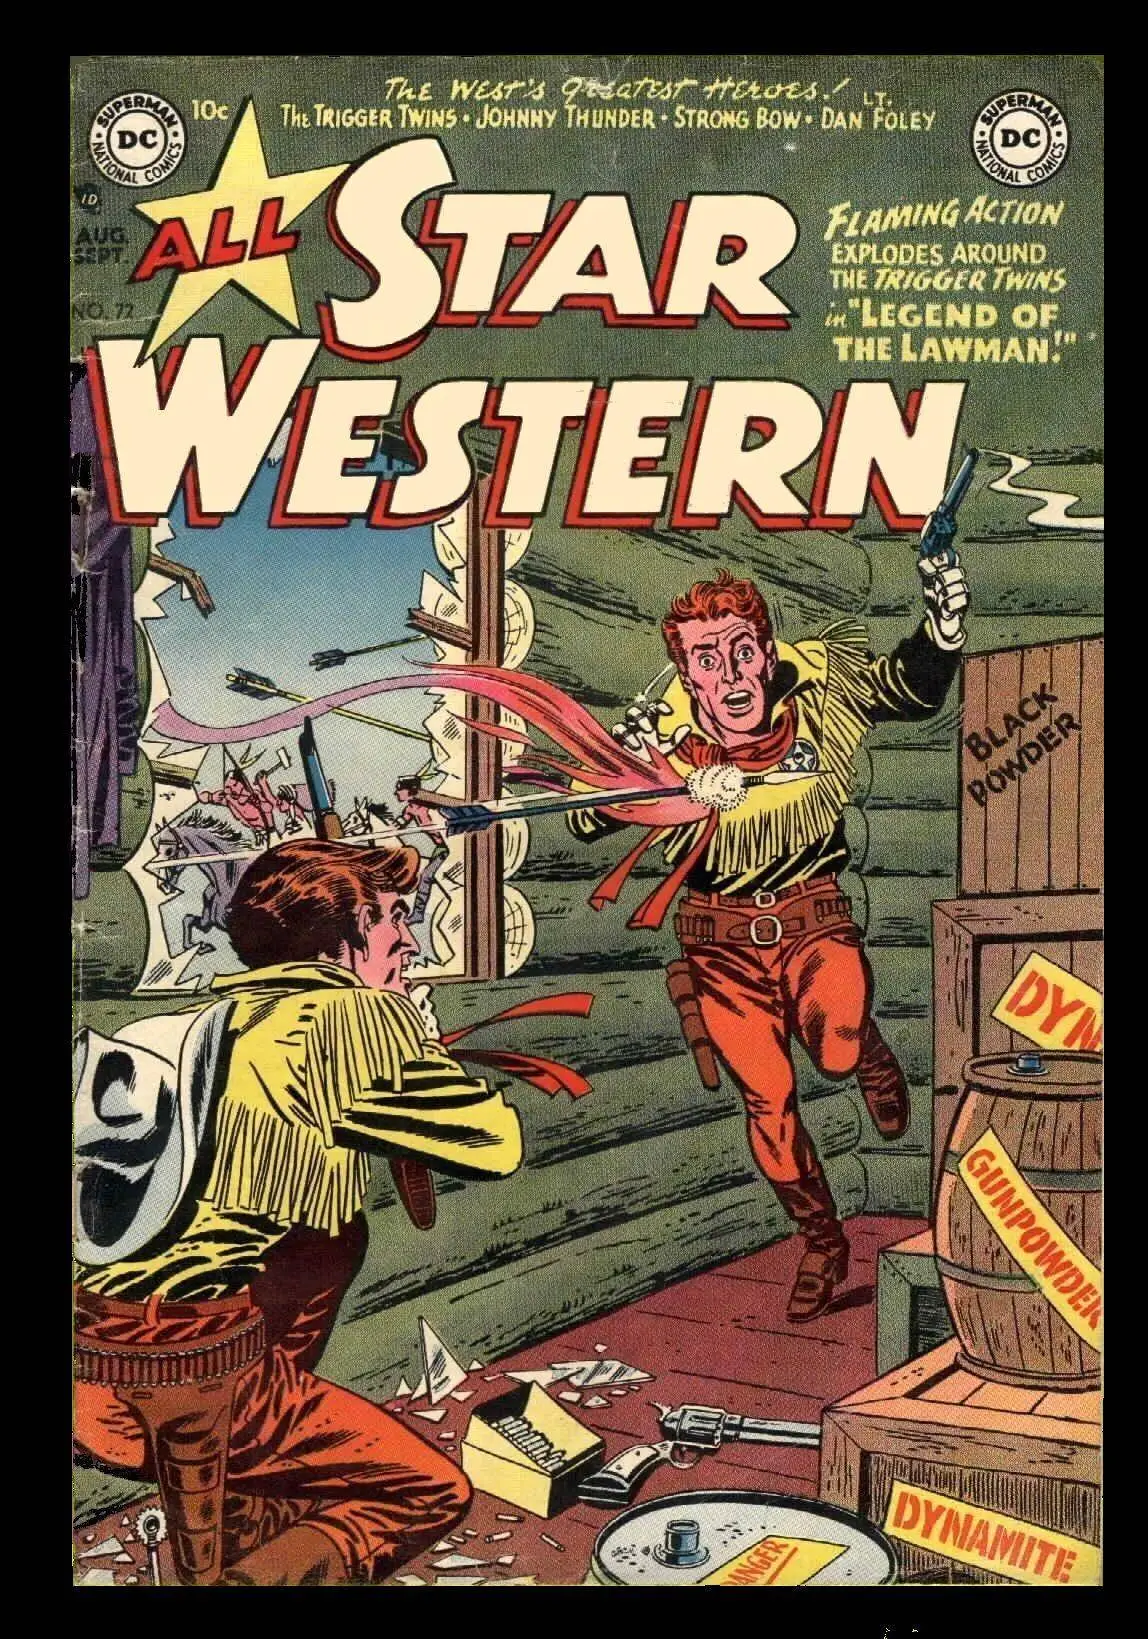 Star Western v1 072 1953